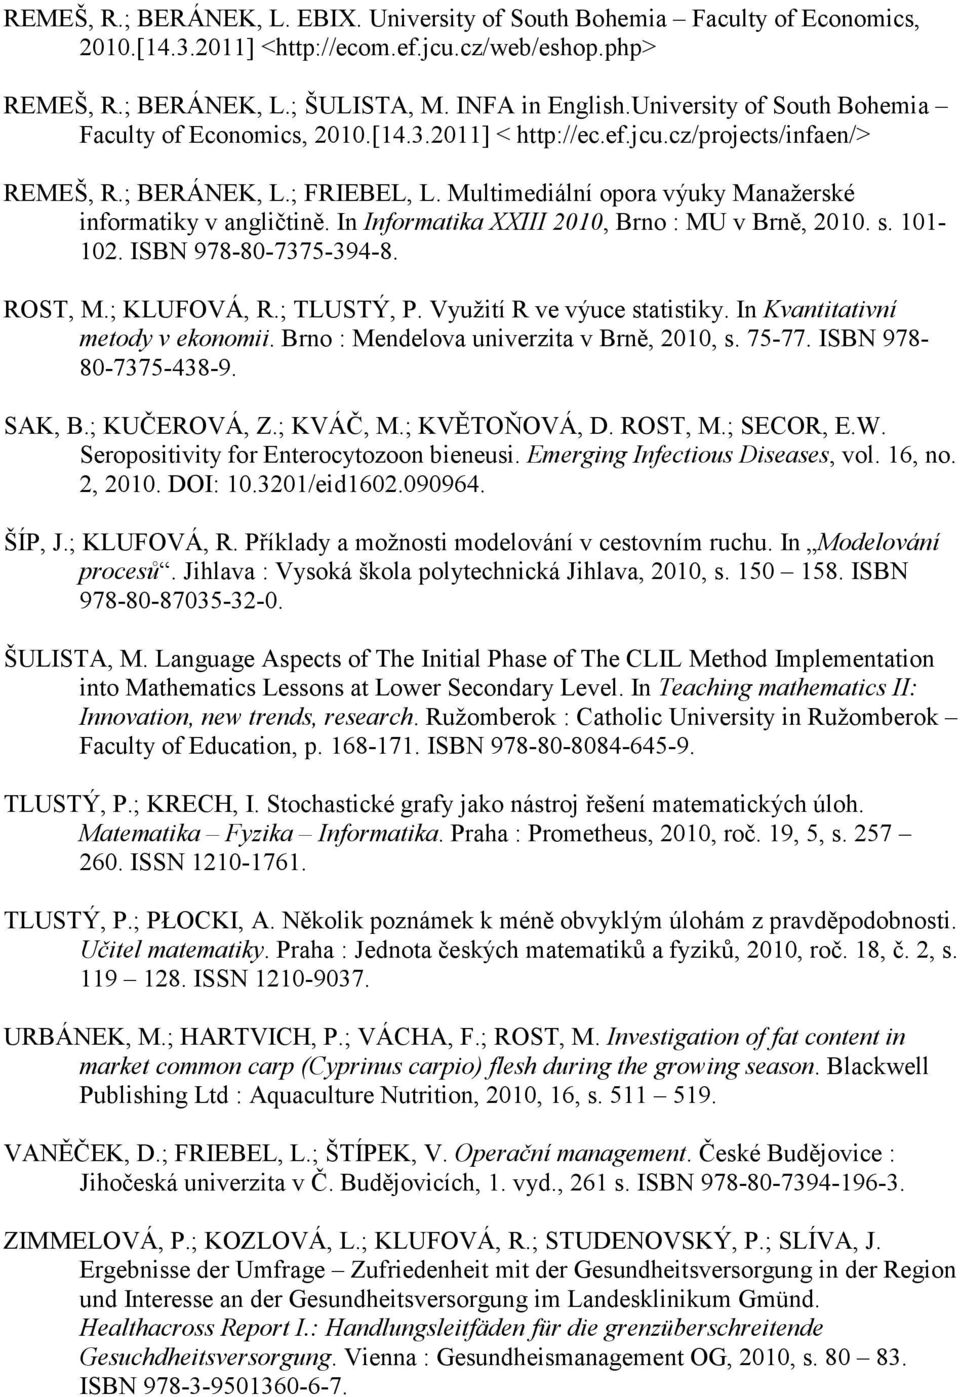 Multimediální opora výuky Manažerské informatiky v angličtině. In Informatika XXIII 2010, Brno : MU v Brně, 2010. s. 101-102. ISBN 978-80-7375-394-8. ROST, M.; KLUFOVÁ, R.; TLUSTÝ, P.